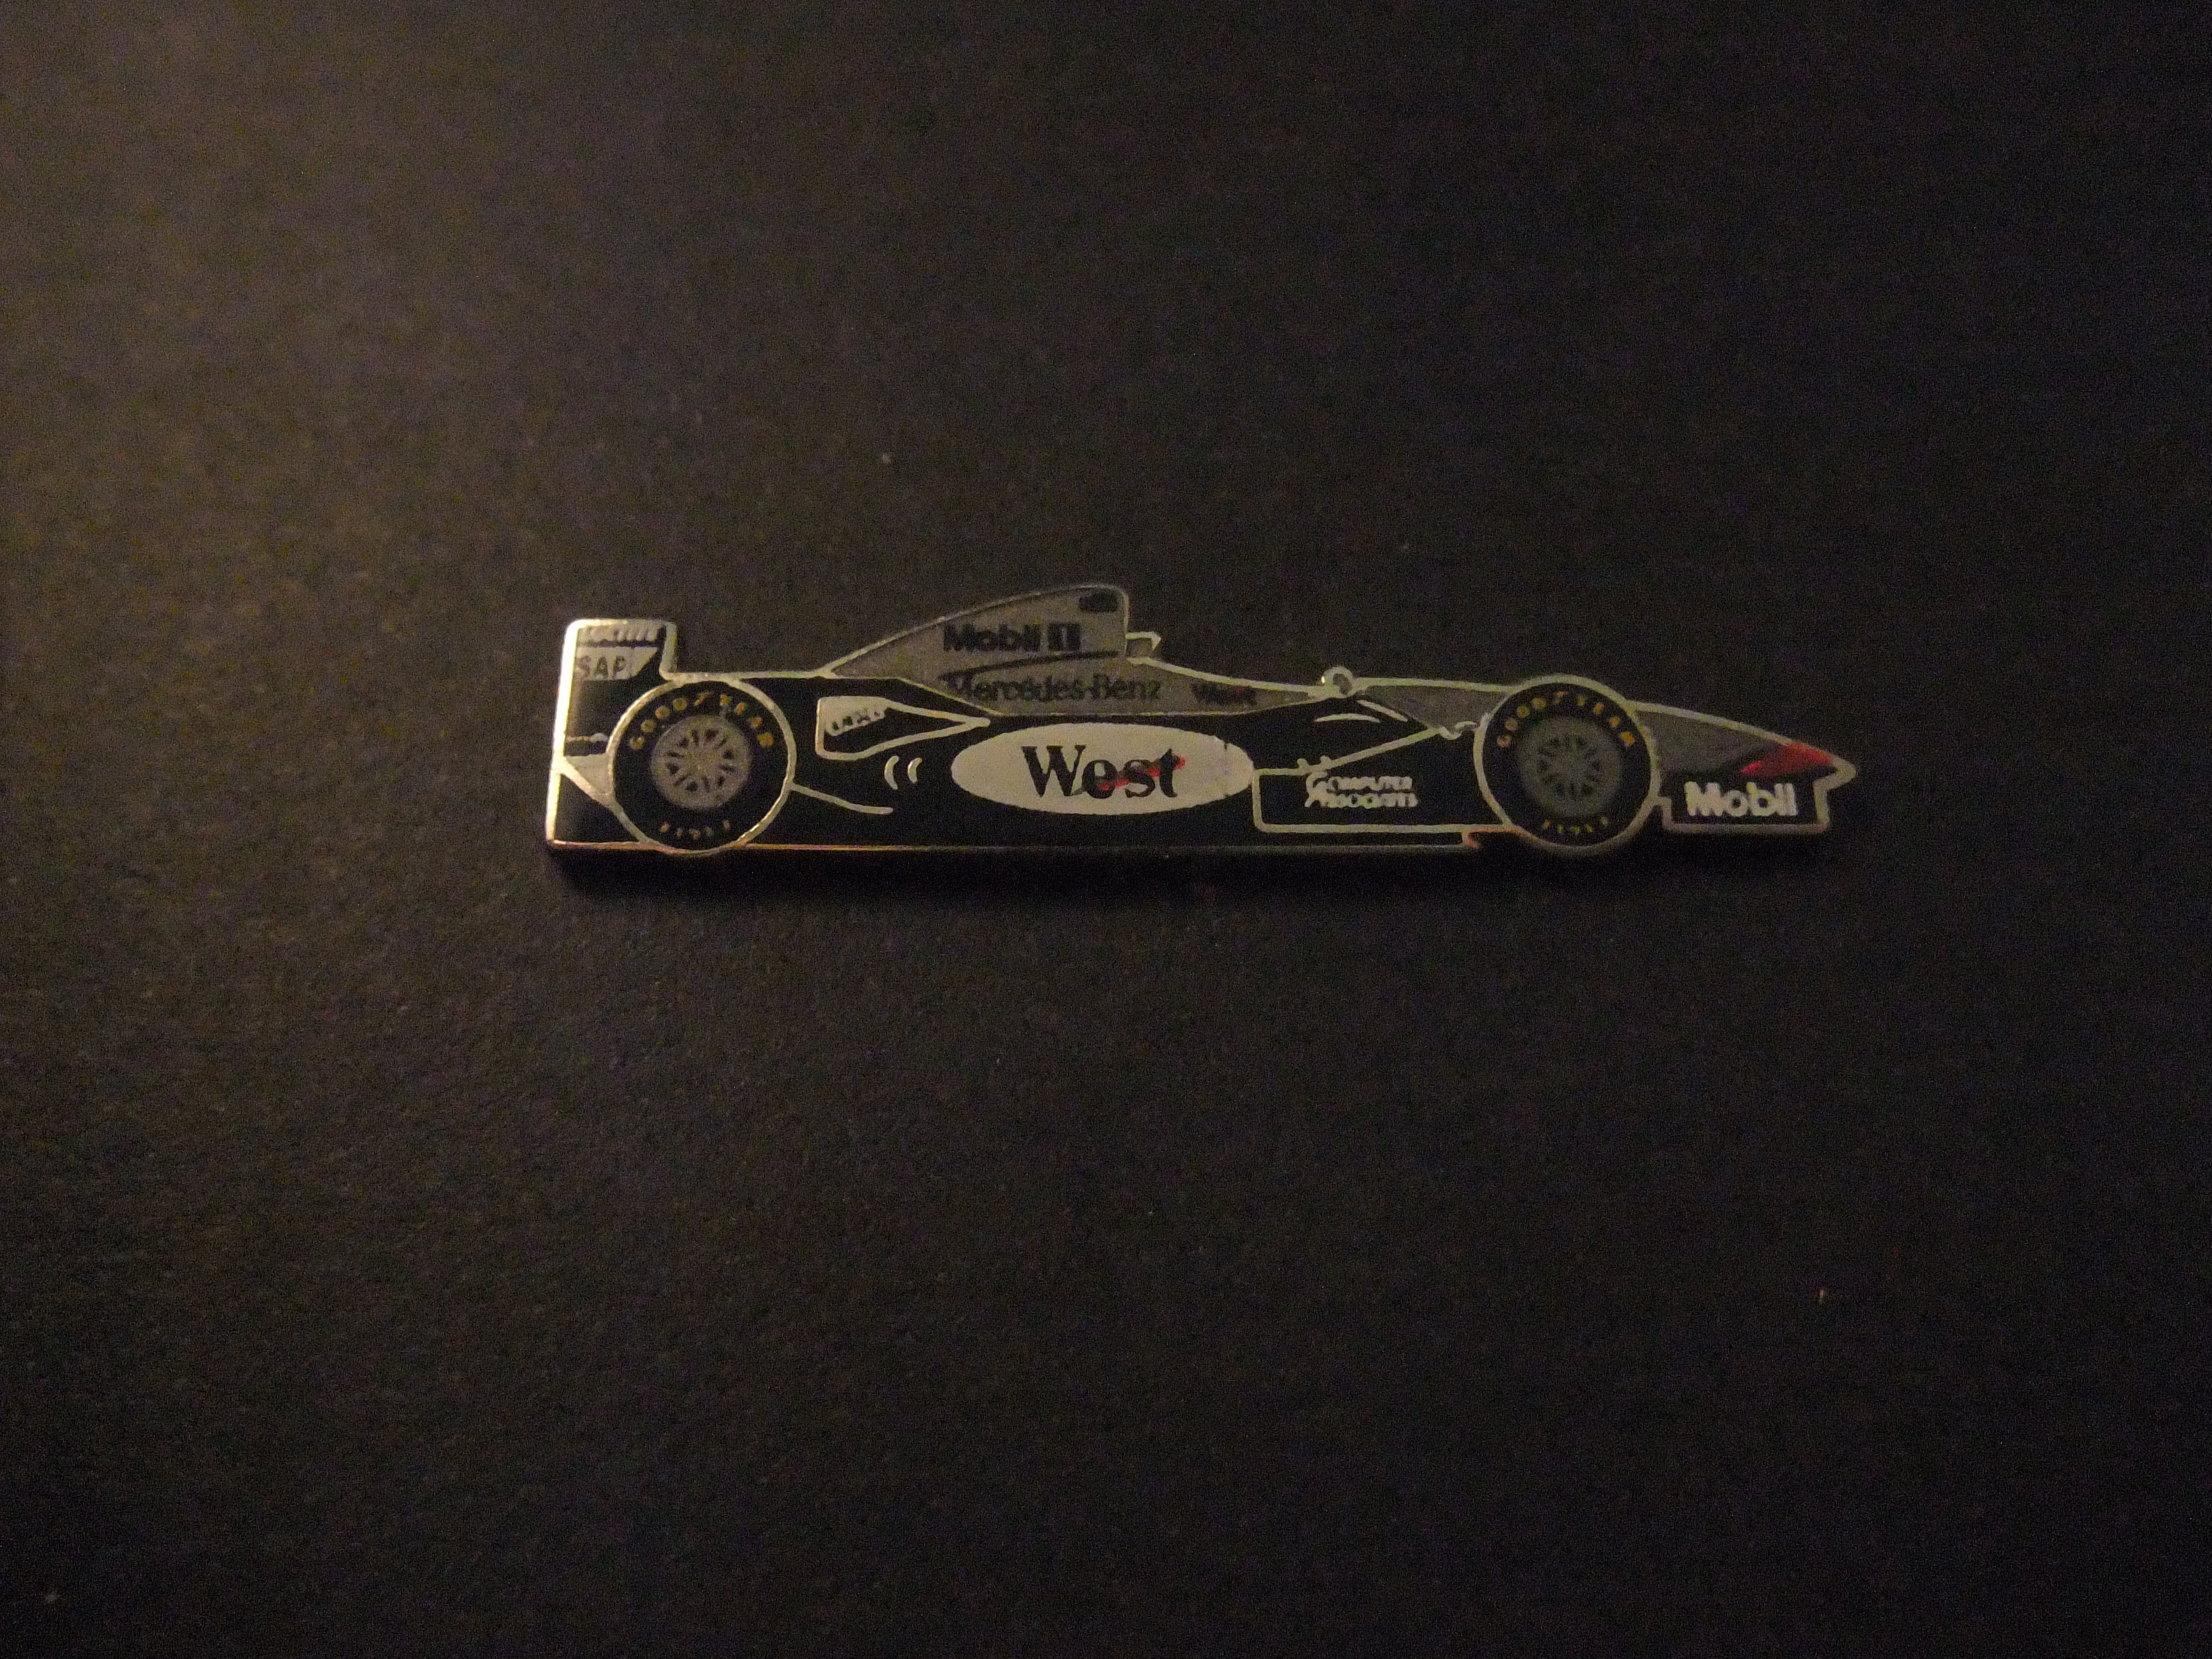 West McLaren Mercedes formule 1 racewagen (sponsor van 1998 en 1999)